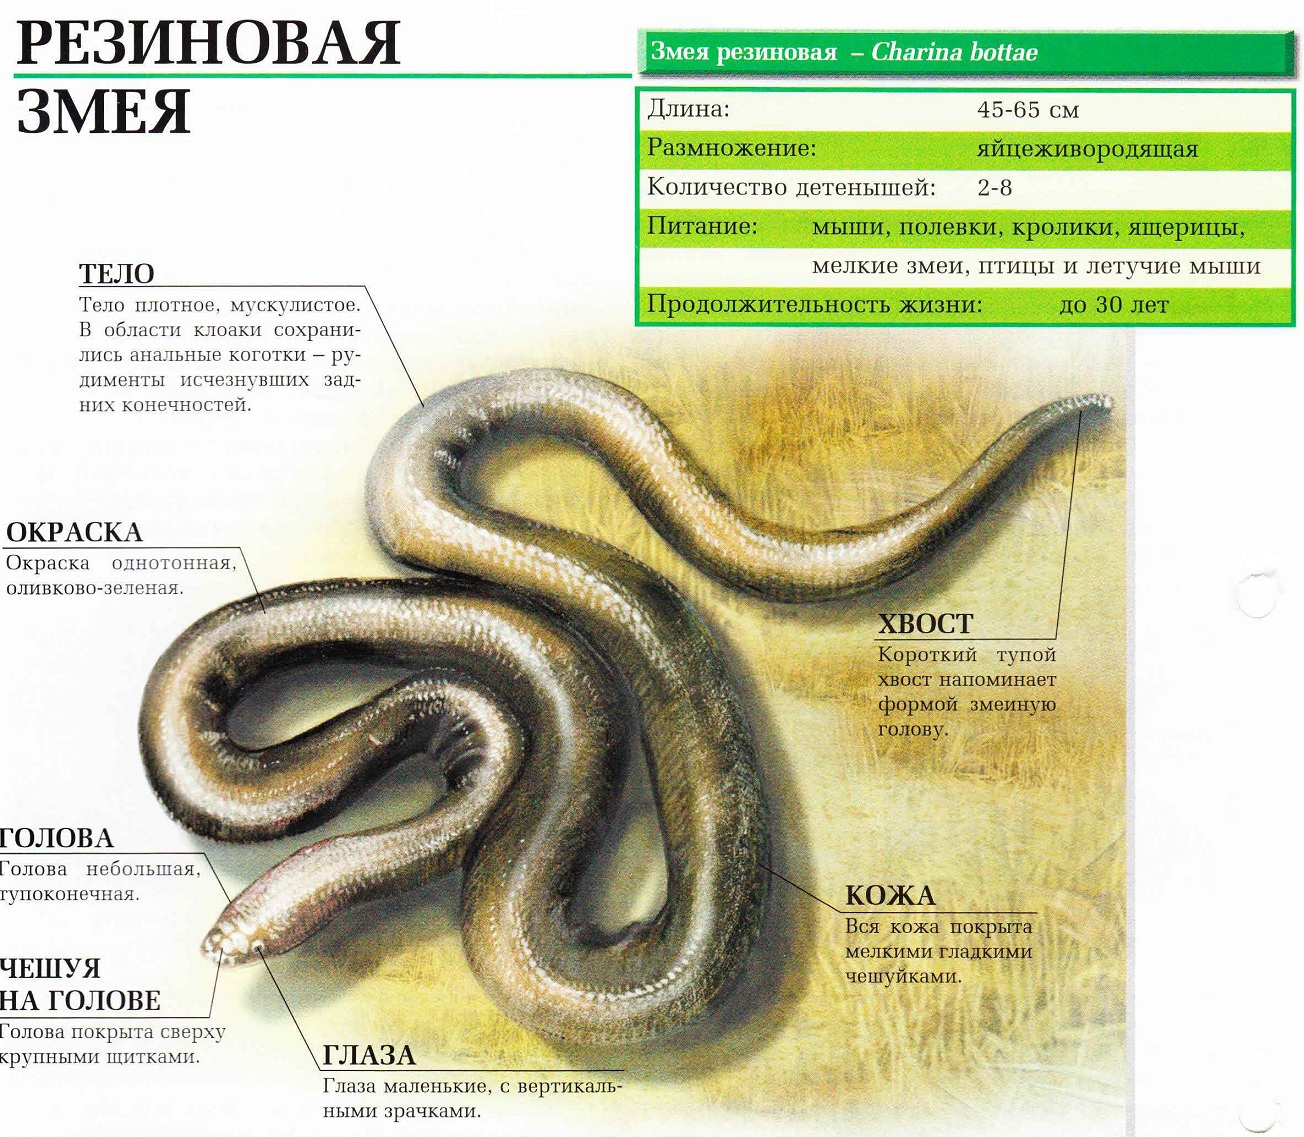 Описание резиновой змеи.